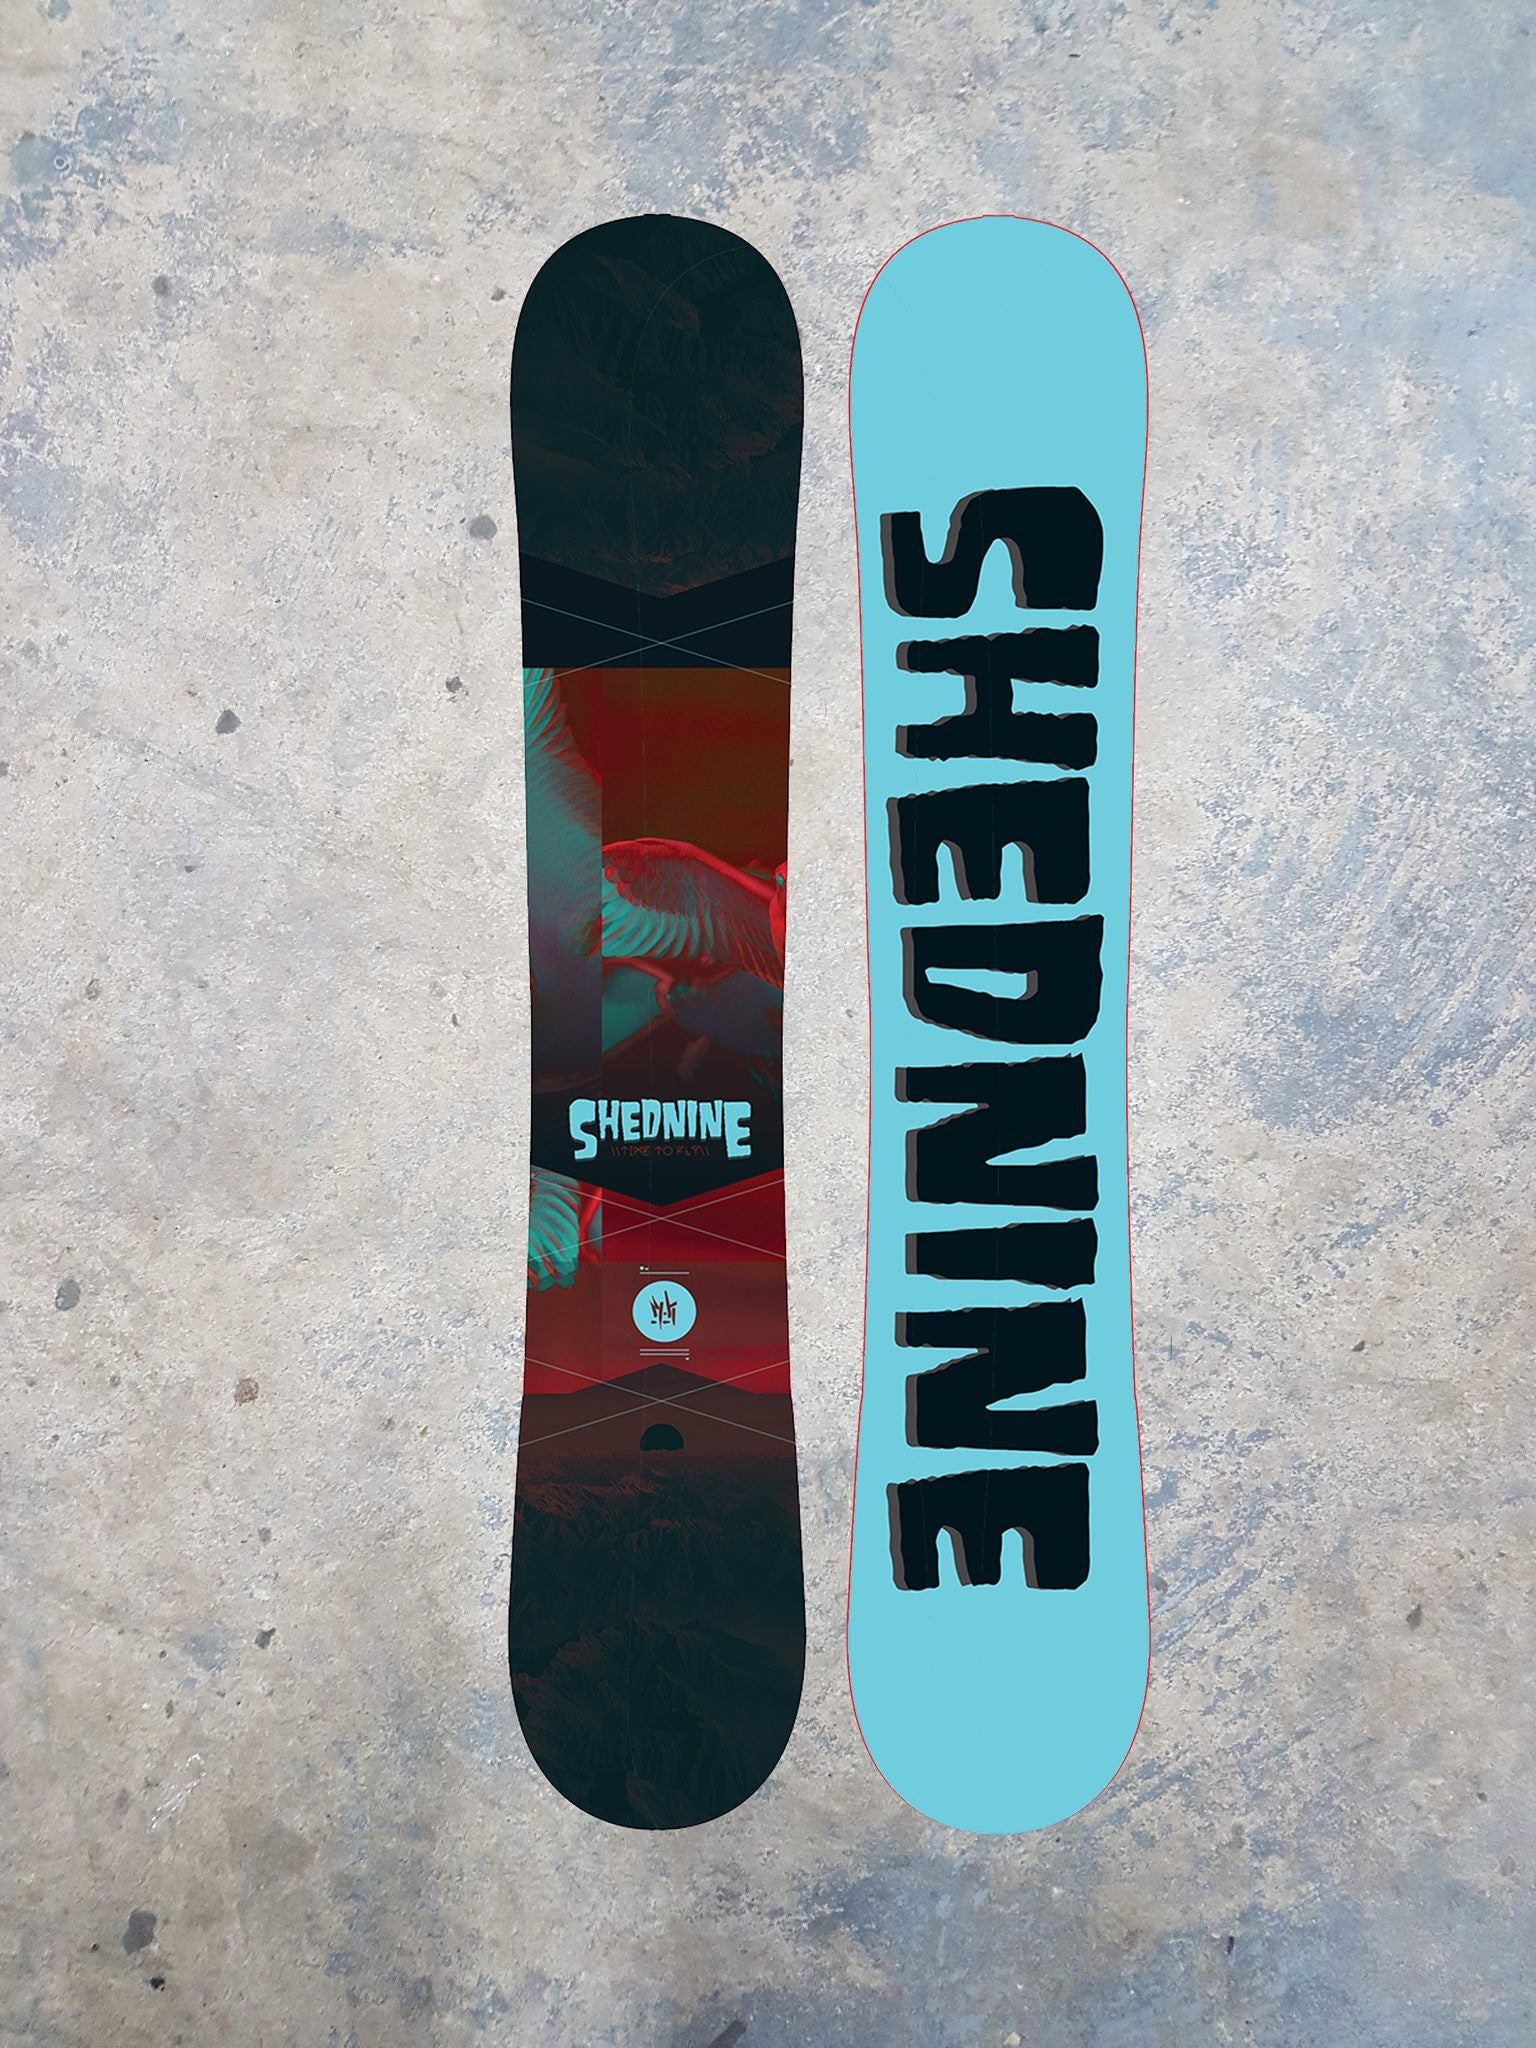 ShedNine "Time To Fly" Custom Snowboard -  Snowboard, Shed Nine, Shed Nine